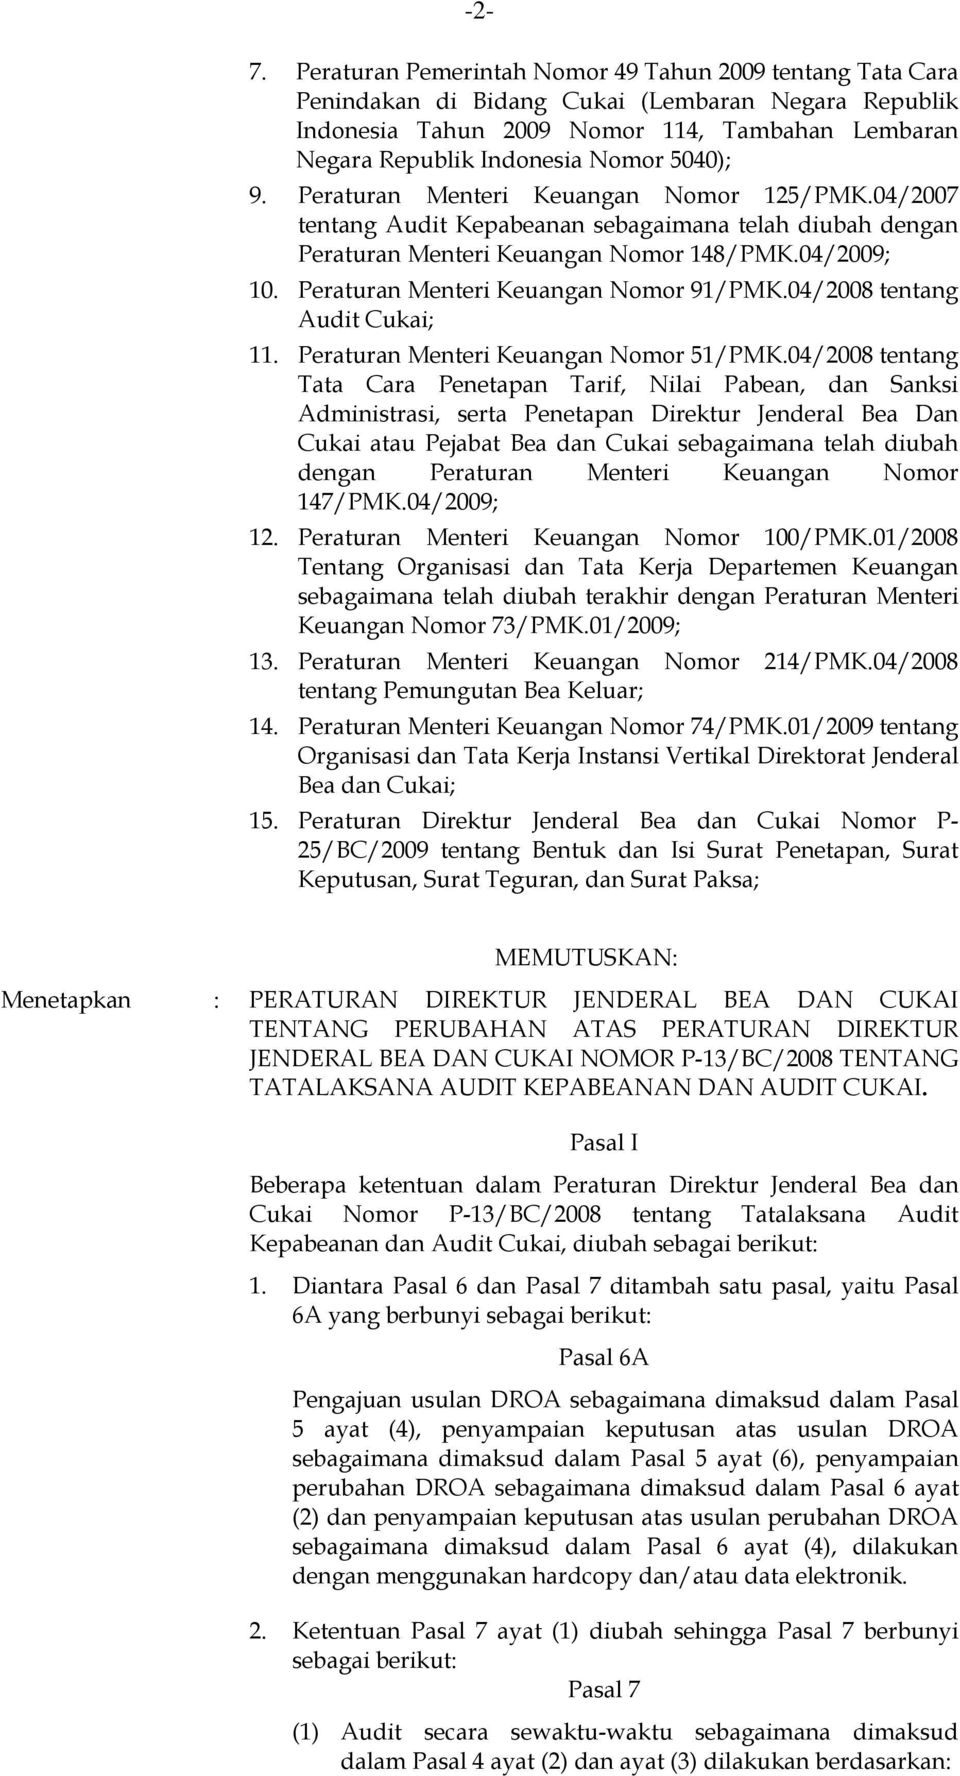 Peraturan Menteri Keuangan Nomor 91/PMK.04/2008 tentang Audit Cukai; 11. Peraturan Menteri Keuangan Nomor 51/PMK.